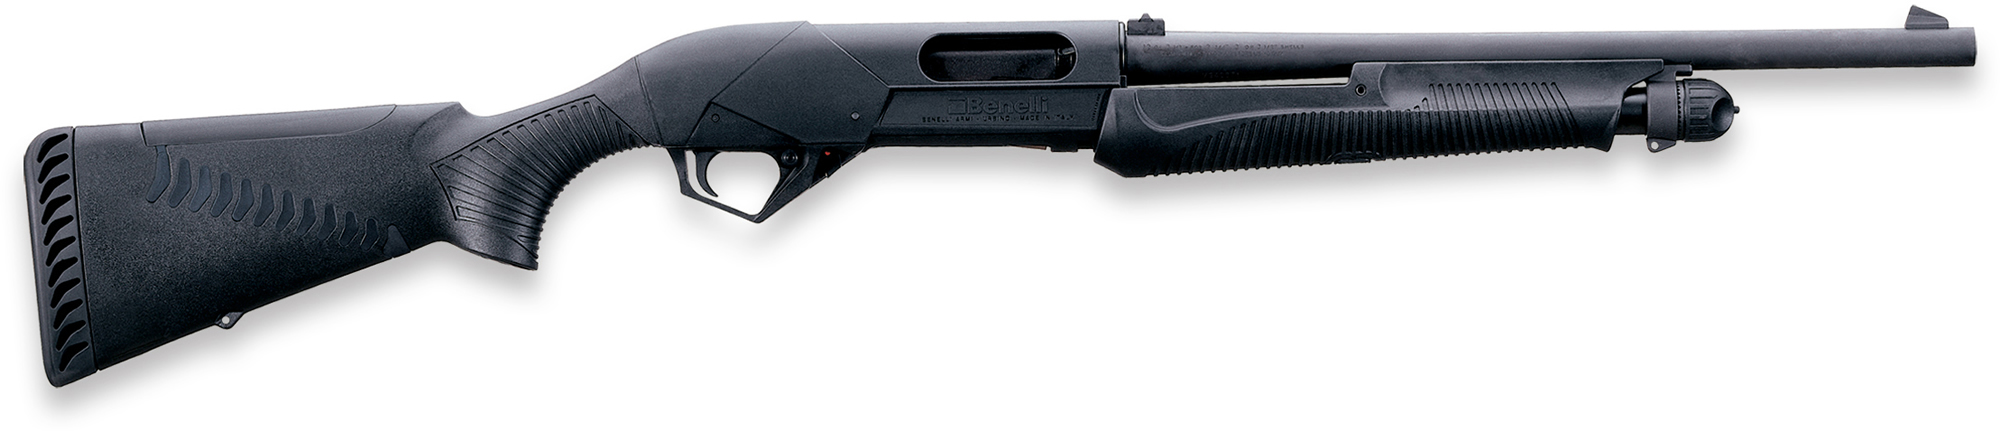 Benelli Super Nova Tactical Pump Shotgun 20145, 12 Gauge, 18